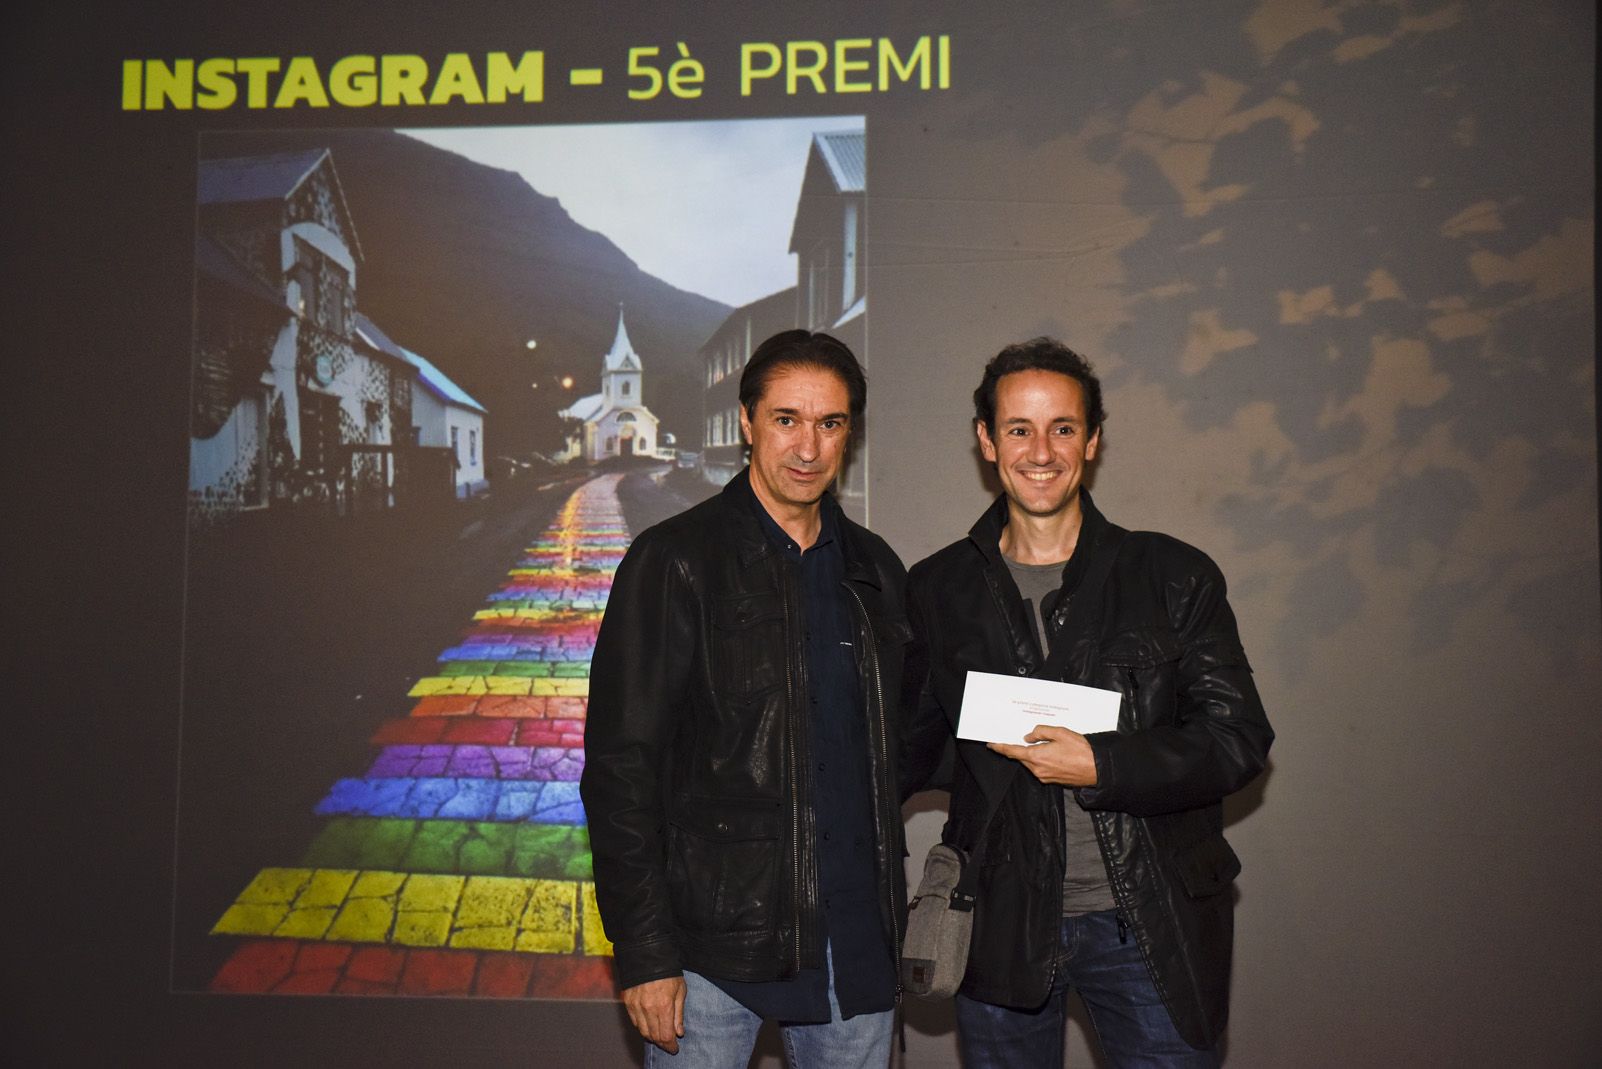 5è premi ‘Instagram’ agsazr - Camí de colors i diversitat. Foto: Bernat Millet.